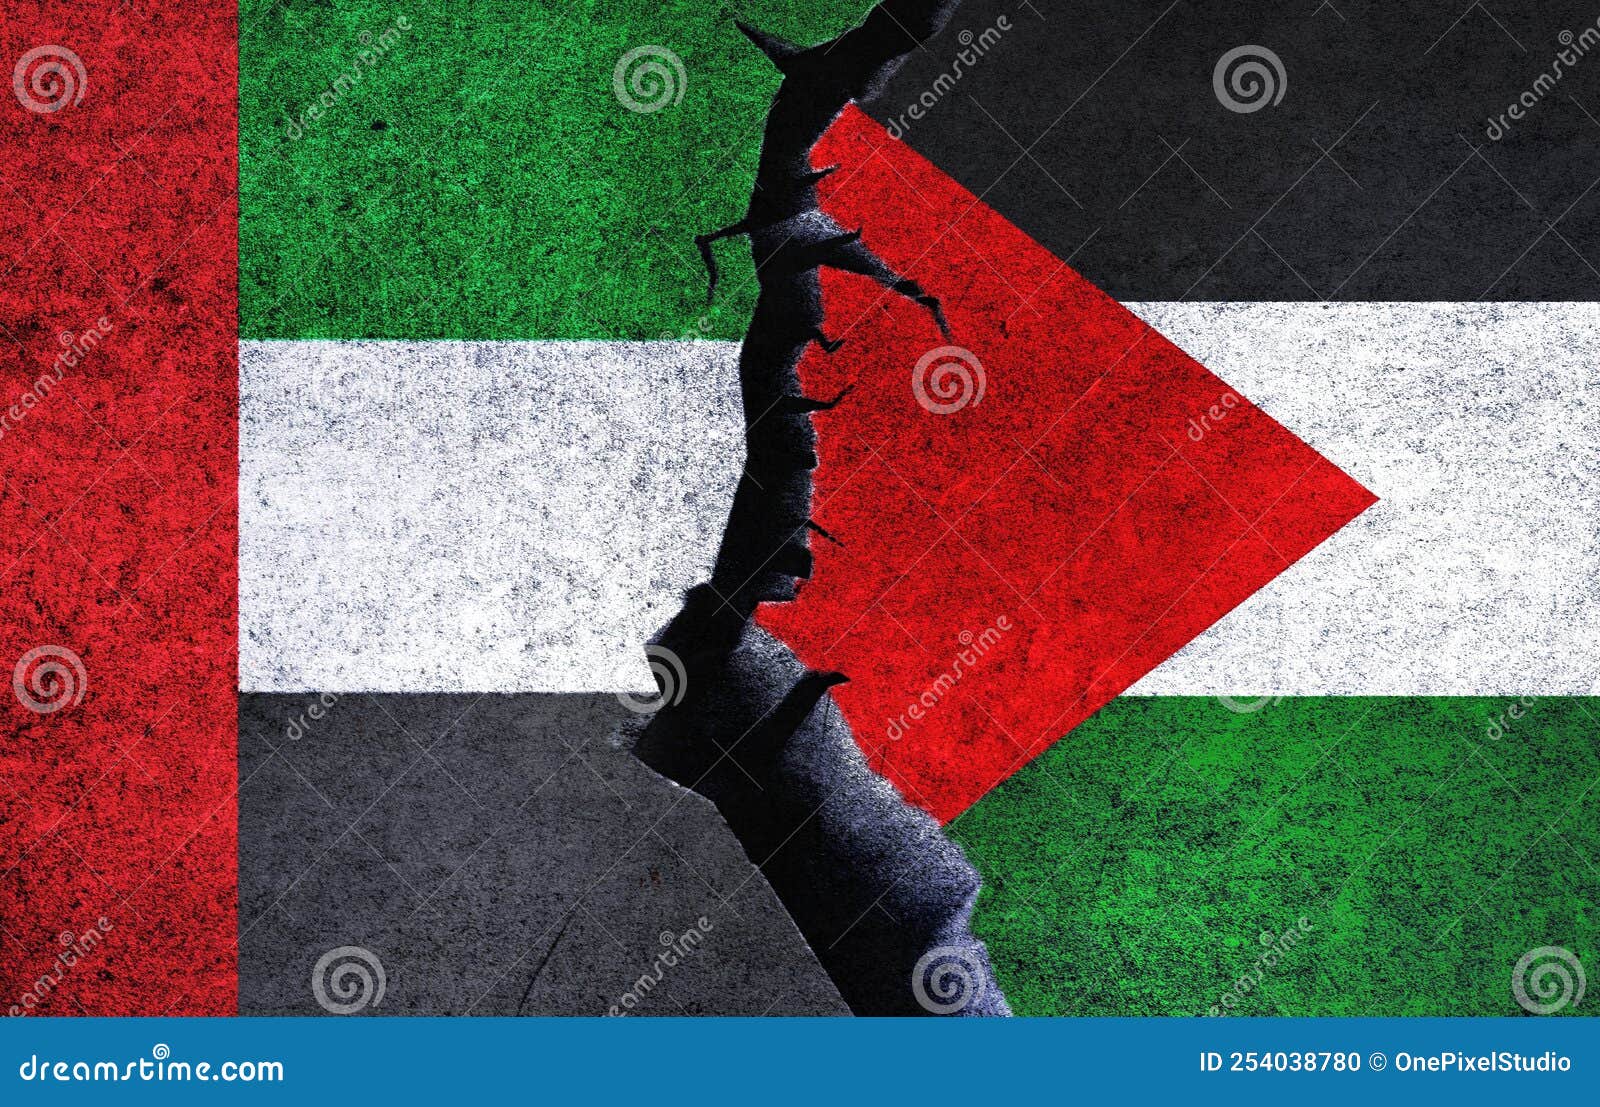 Palästina -autoflagge Palästinensische Arabische Flagge Fahnenmast